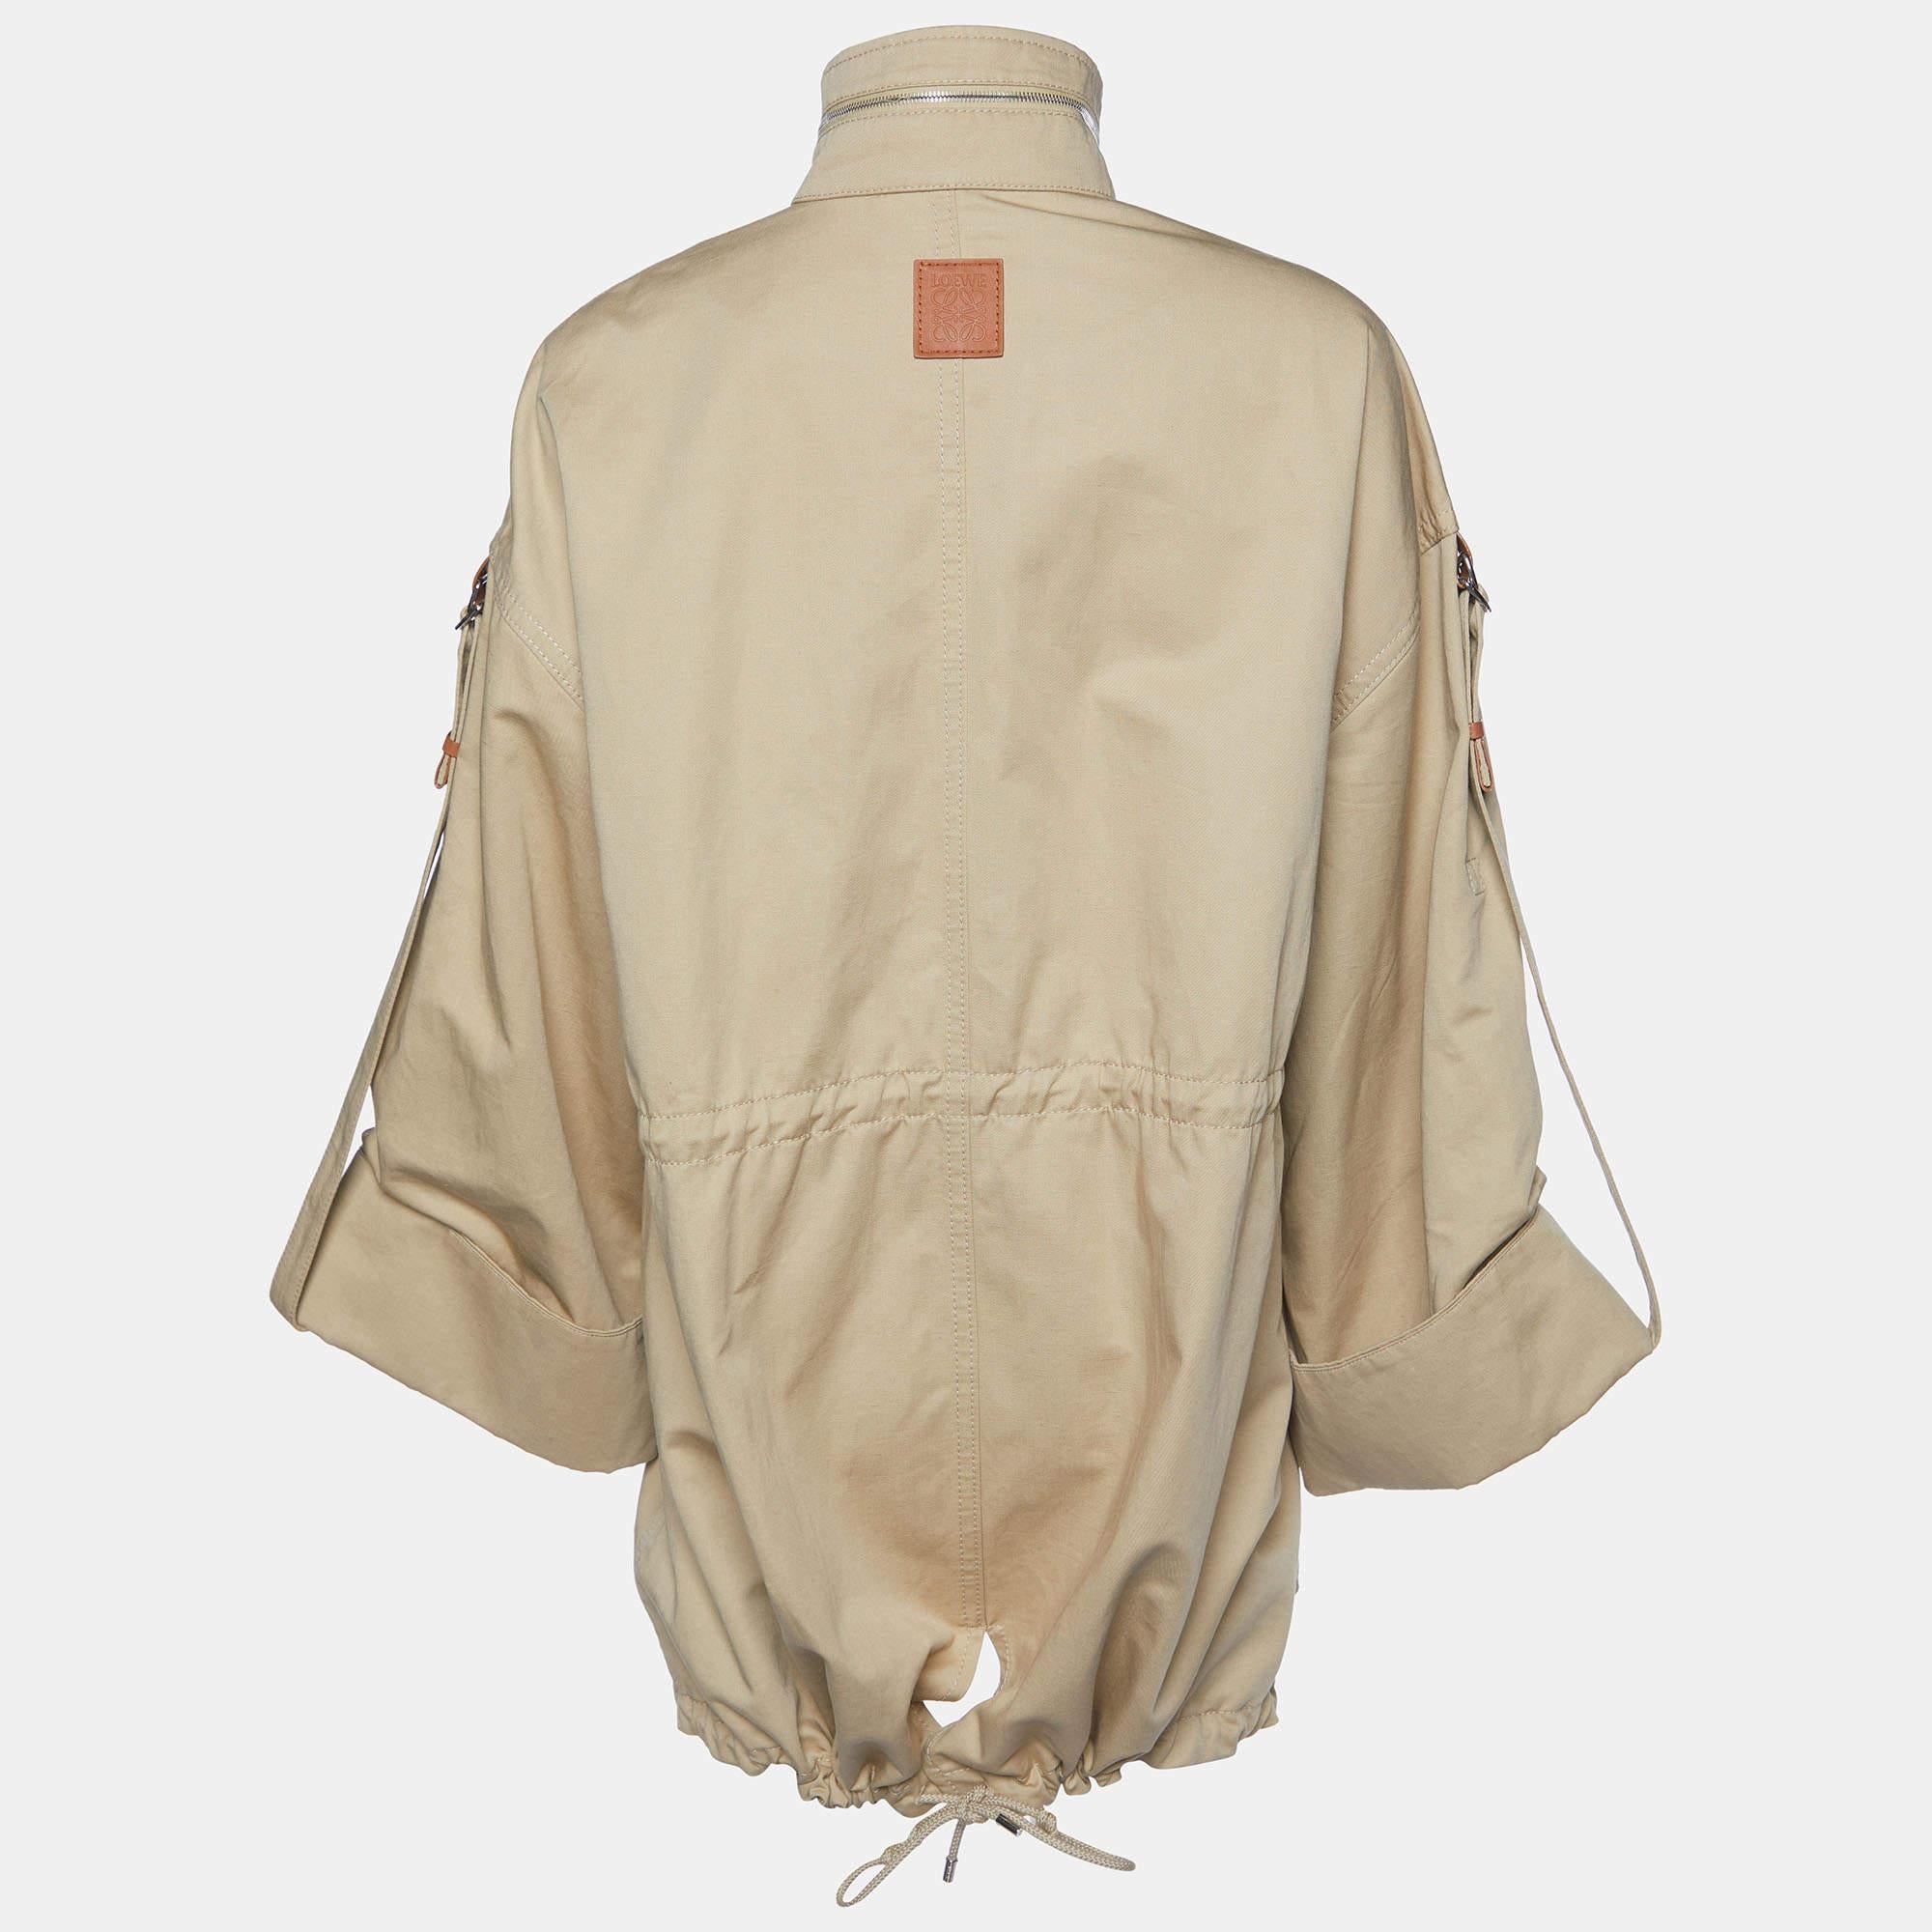 Loewe Beige Cotton & Linen Military Coat L

